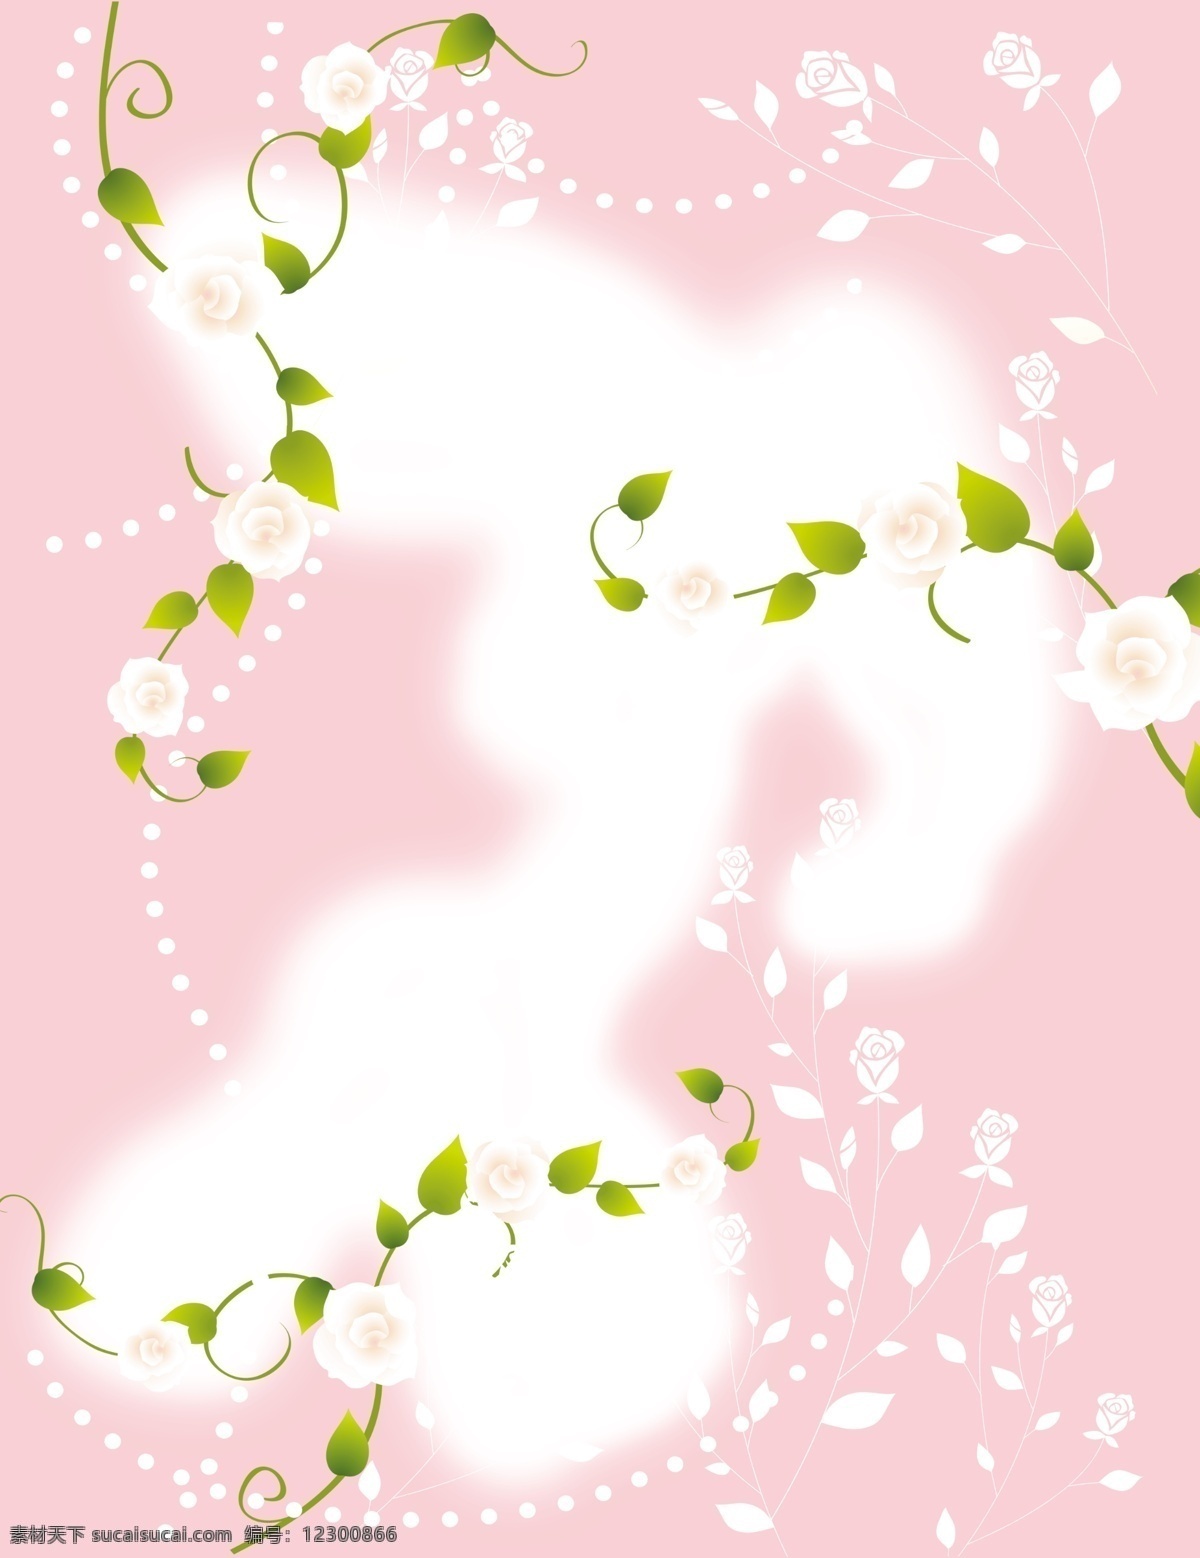 白玫瑰 粉色 广告设计模板 玫瑰 梦幻 移门 移门图案 源文件 粉红 俏佳人 模板下载 粉红俏佳人 psd源文件